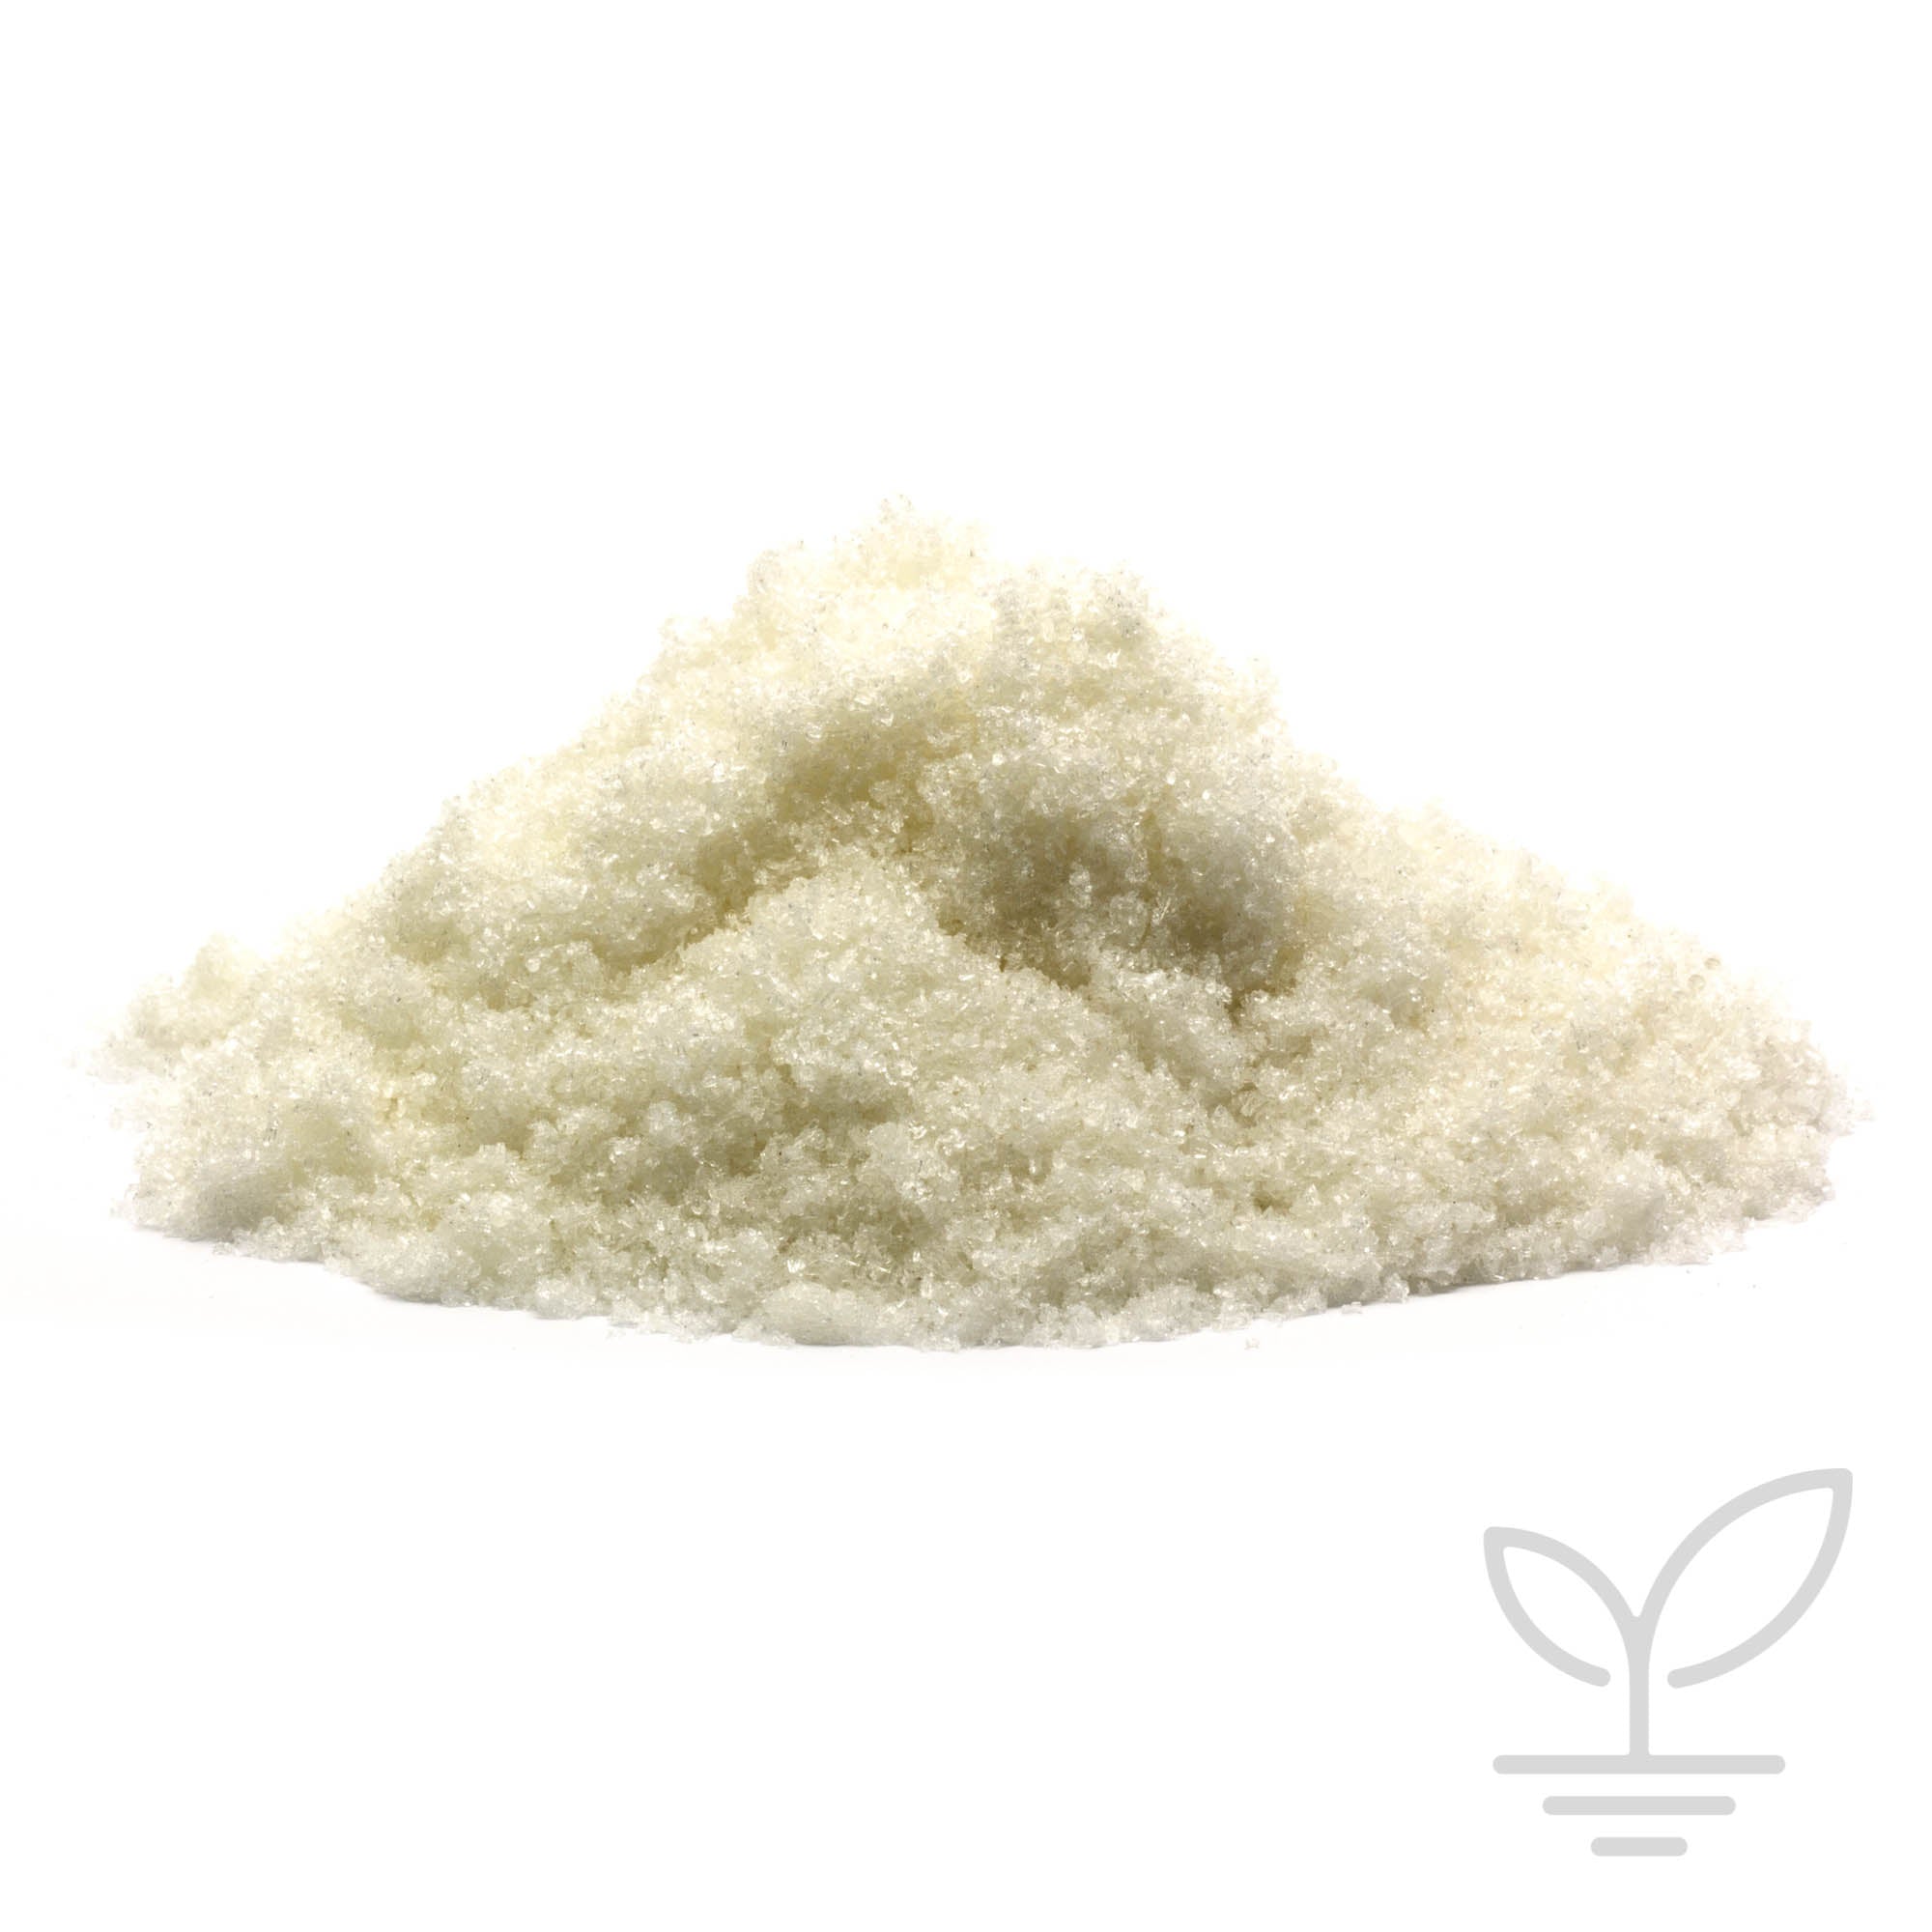 Seacliff Organics - Magnesium Sulfate (Epsom Salts)